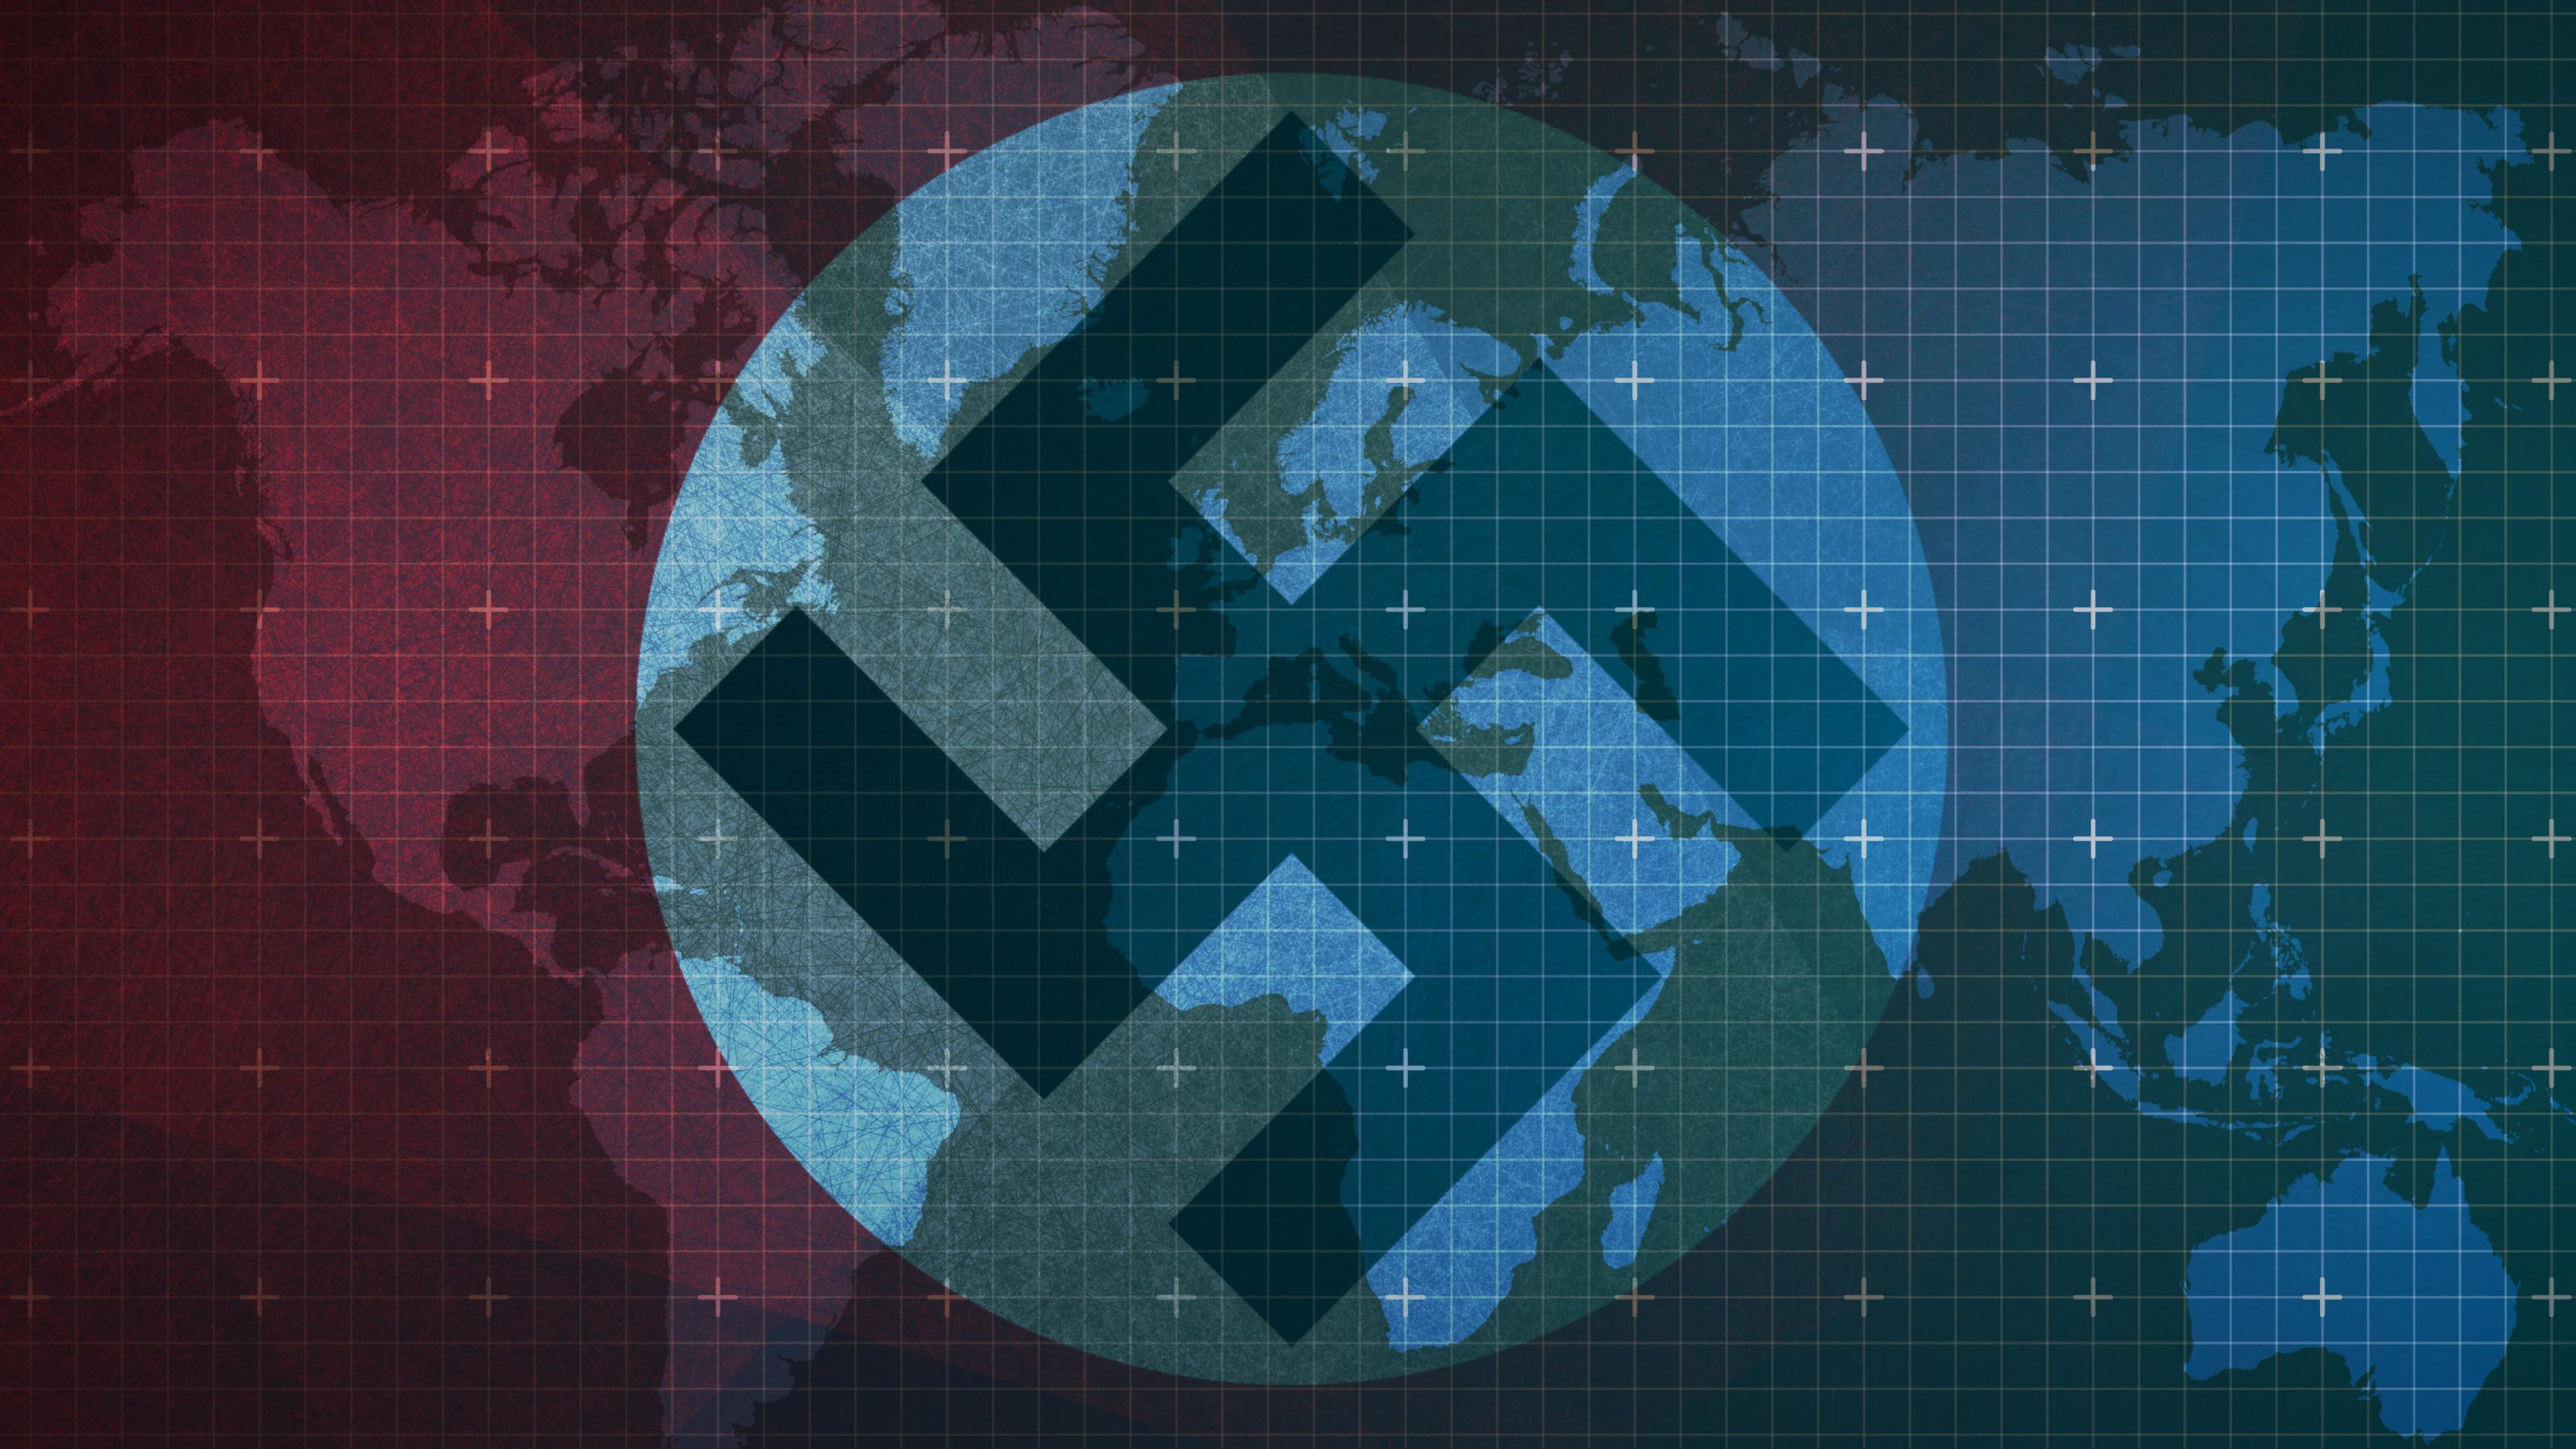 Die Hakenkreuzflagge überlagert eine schematische Weltkarte